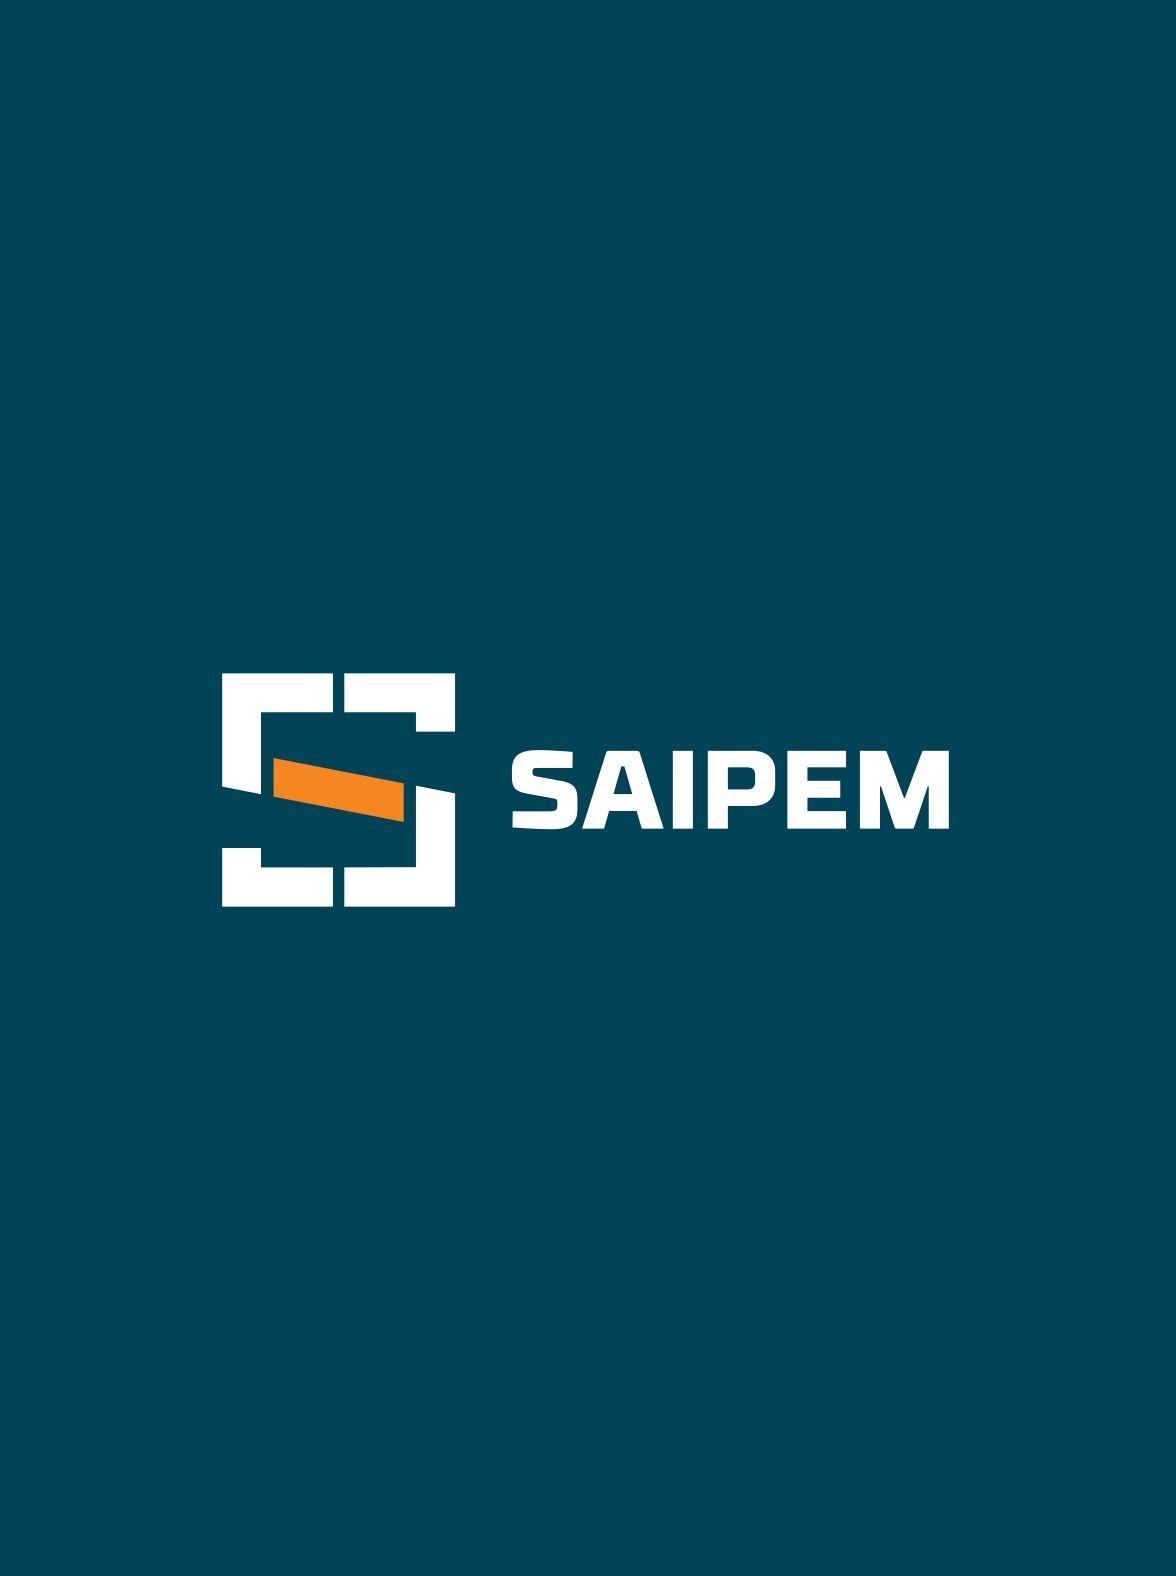 Saipem Logo - History | Saipem